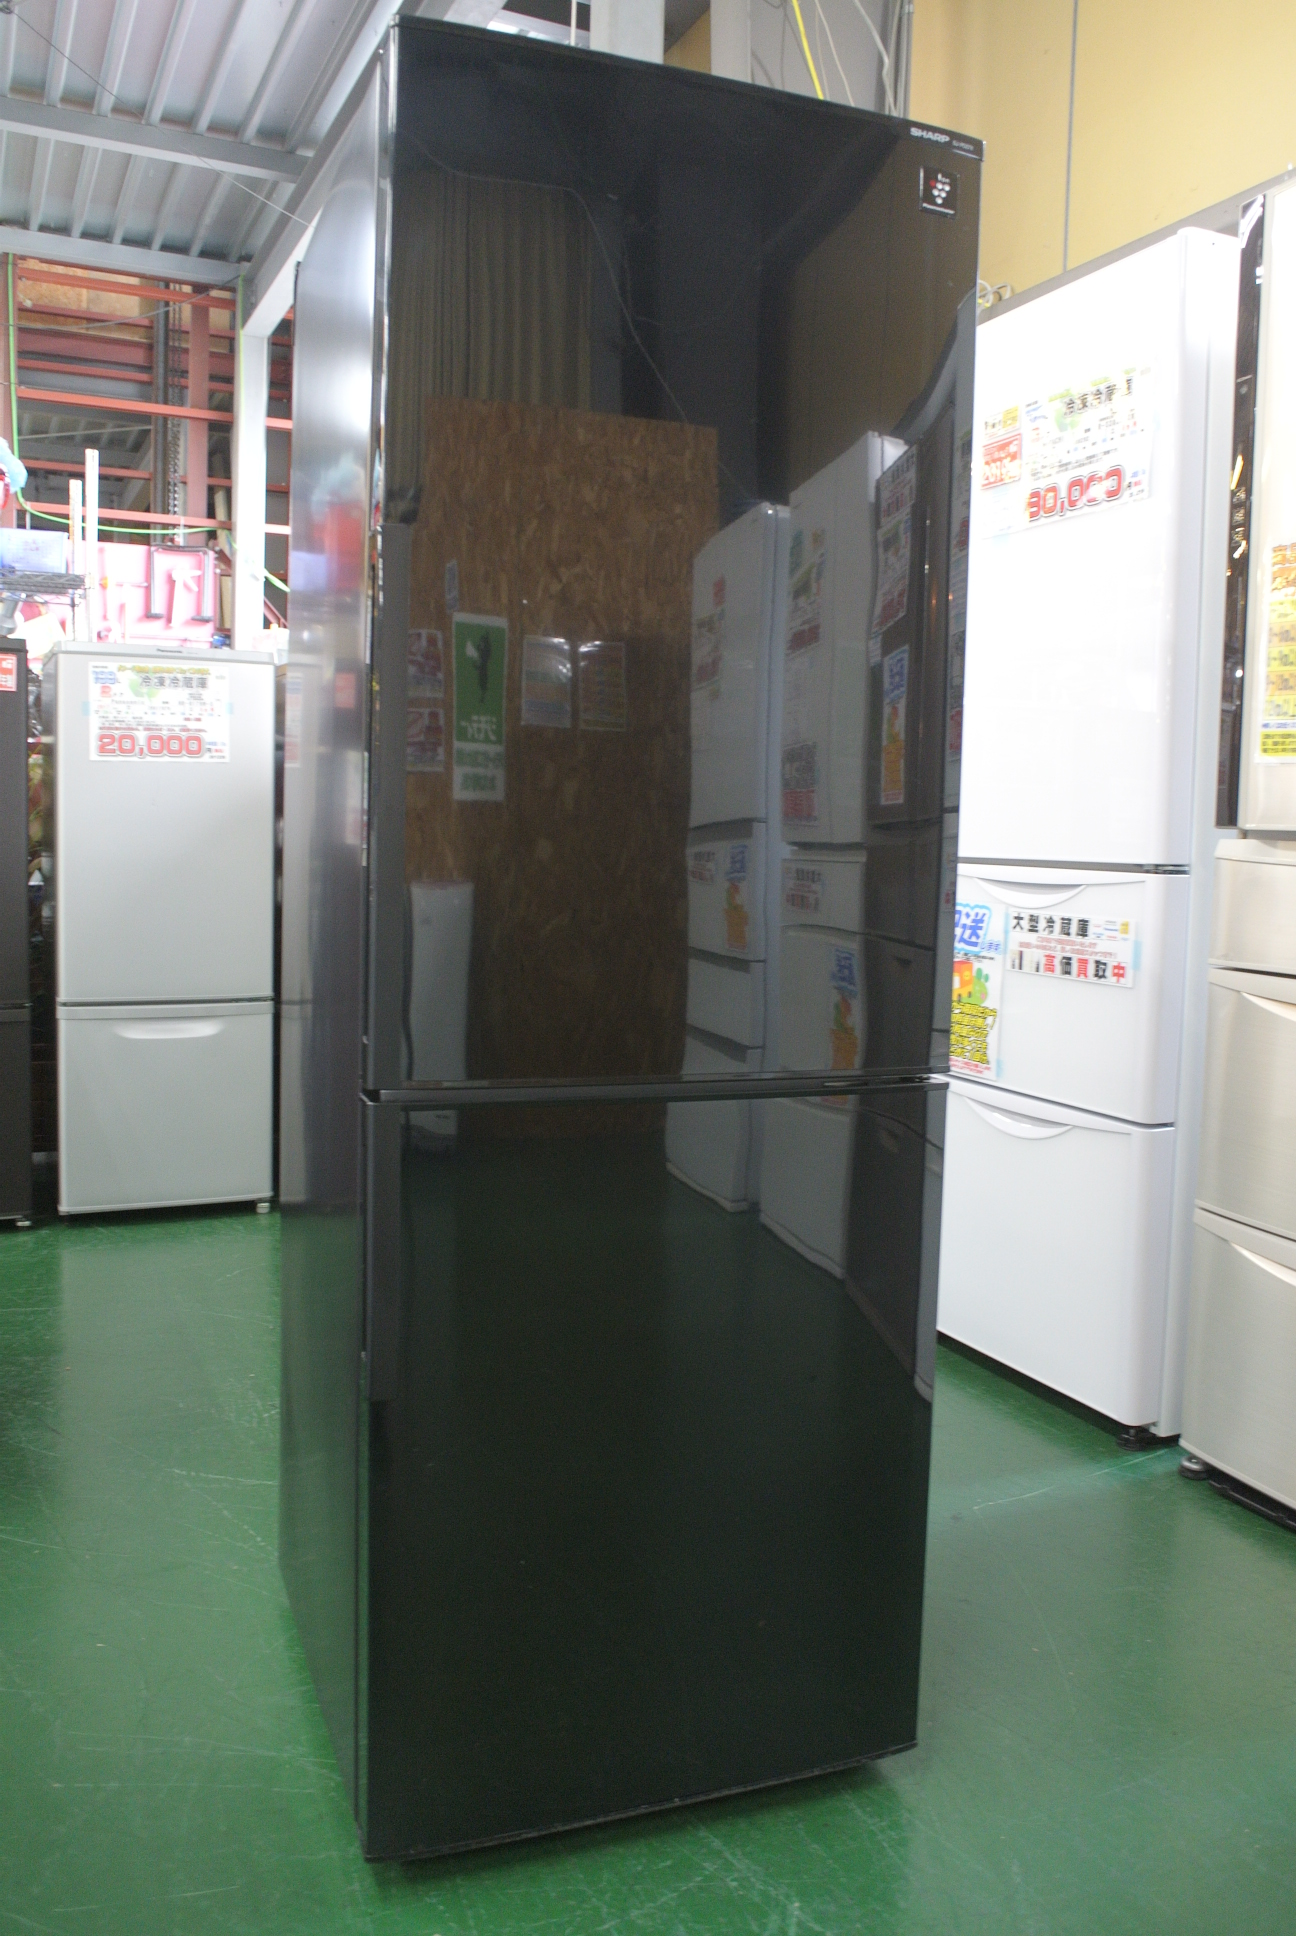 シャープ 270L 2ドア冷蔵庫 SJ-PD27X-Bが入荷しました。 柏市の